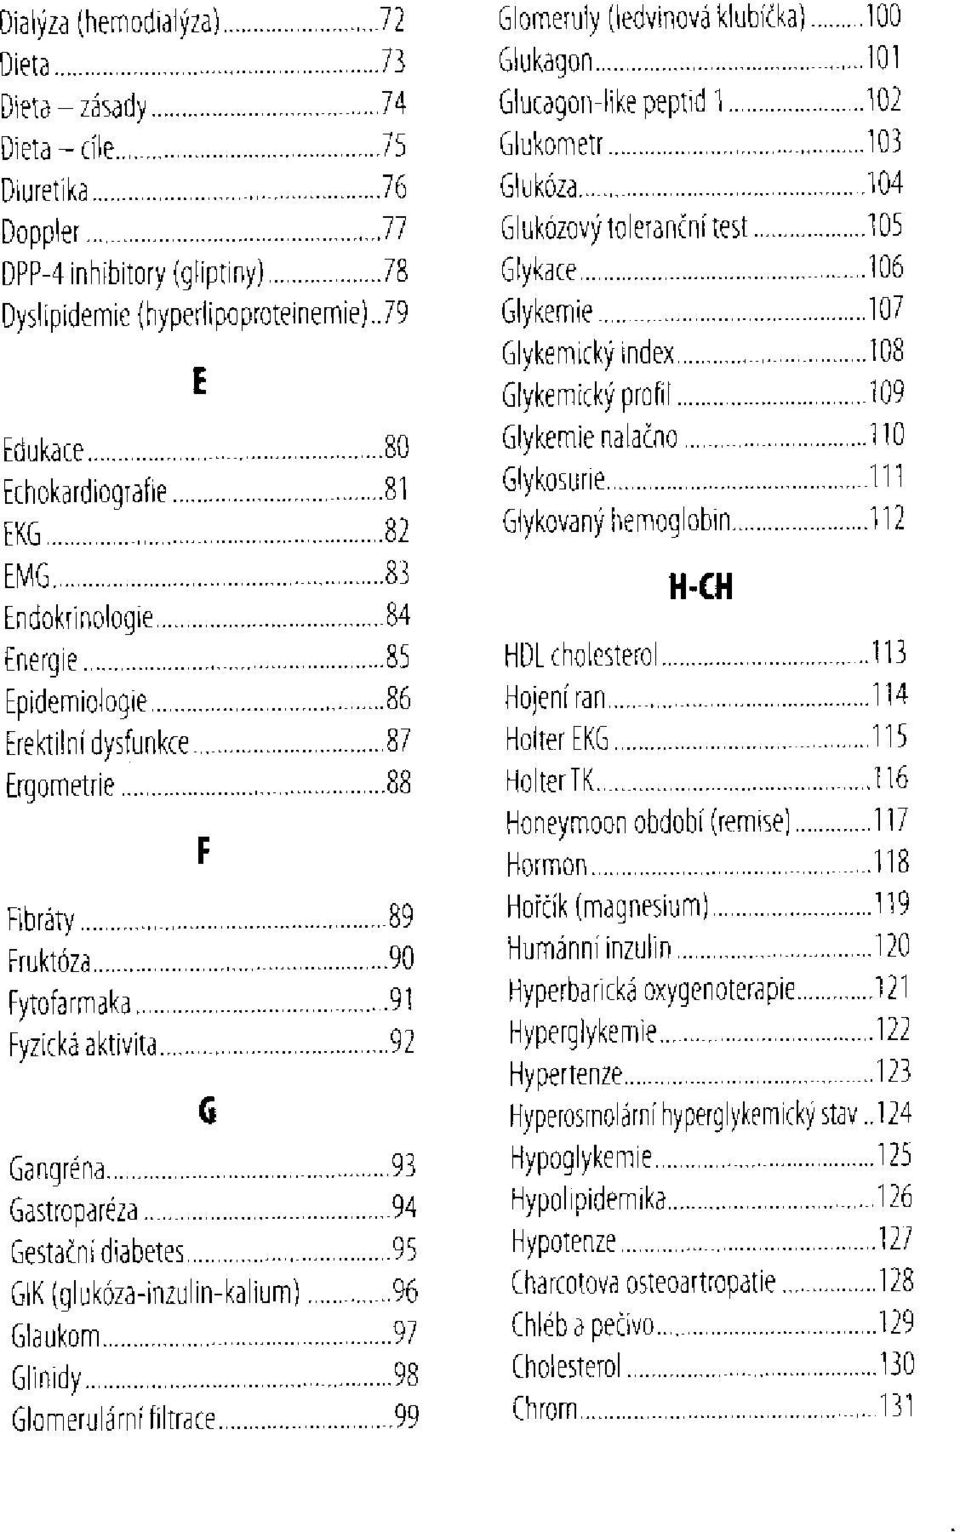 GIK(glukóza-inzulin-kalium) Glaukom Glinidy Glomerulární filtrace Glomeruly (ledvinová klubíčka) Glukagon Glucagon-like peptid l Glukometr Glukóza Glukózový toleranční test Glykace Glykemie